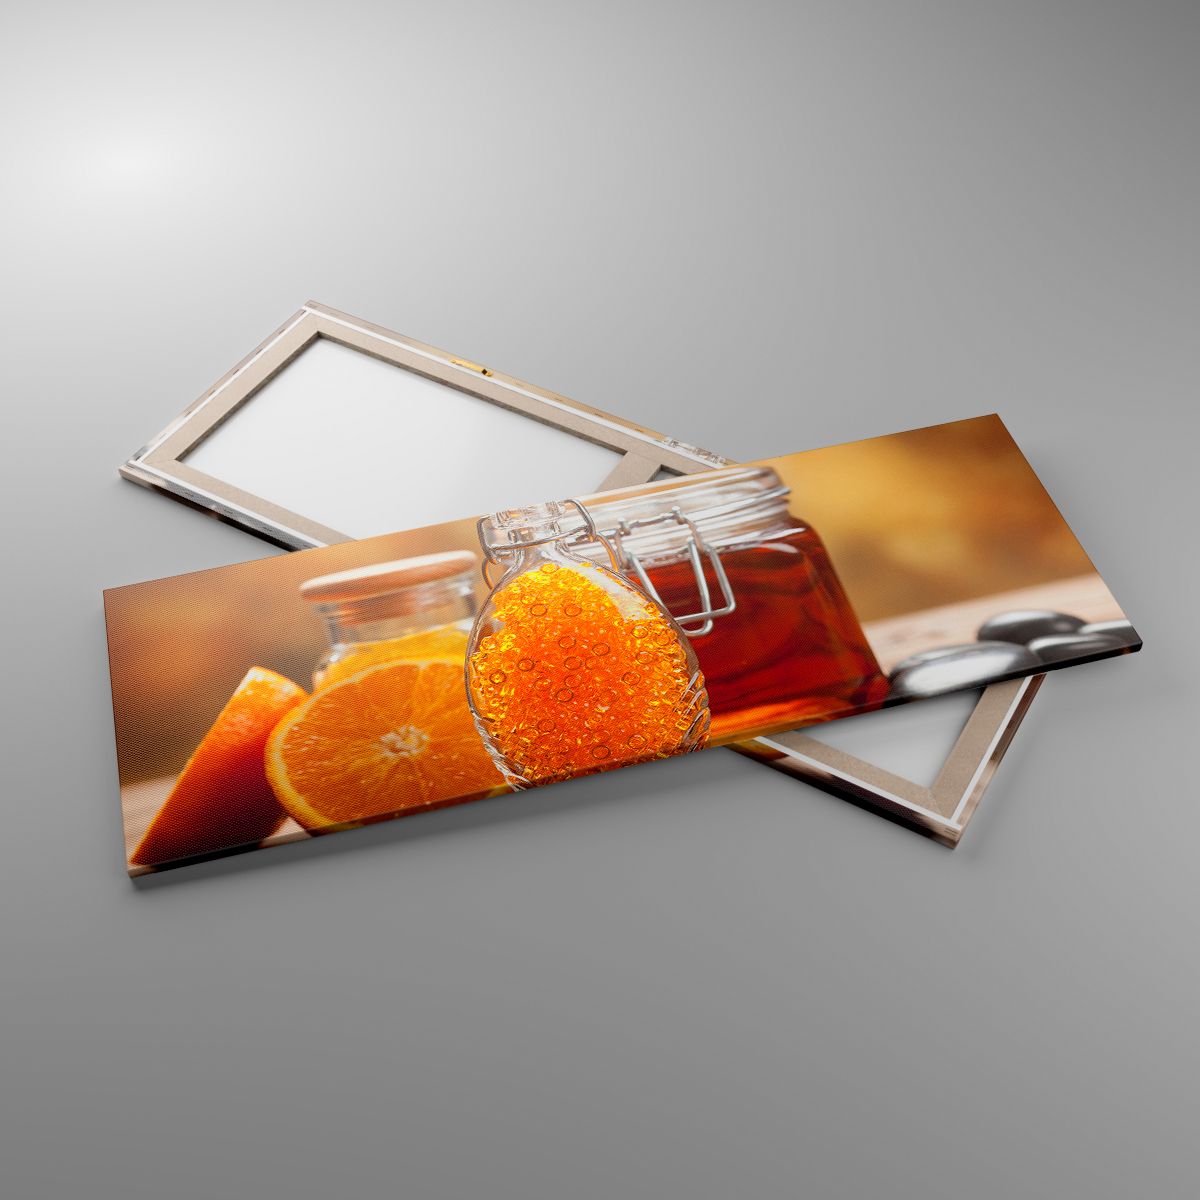 Leinwandbild Gastronomie, Leinwandbild Orange, Leinwandbild Glas Mit Honig, Leinwandbild Steine, Leinwandbild Orangen